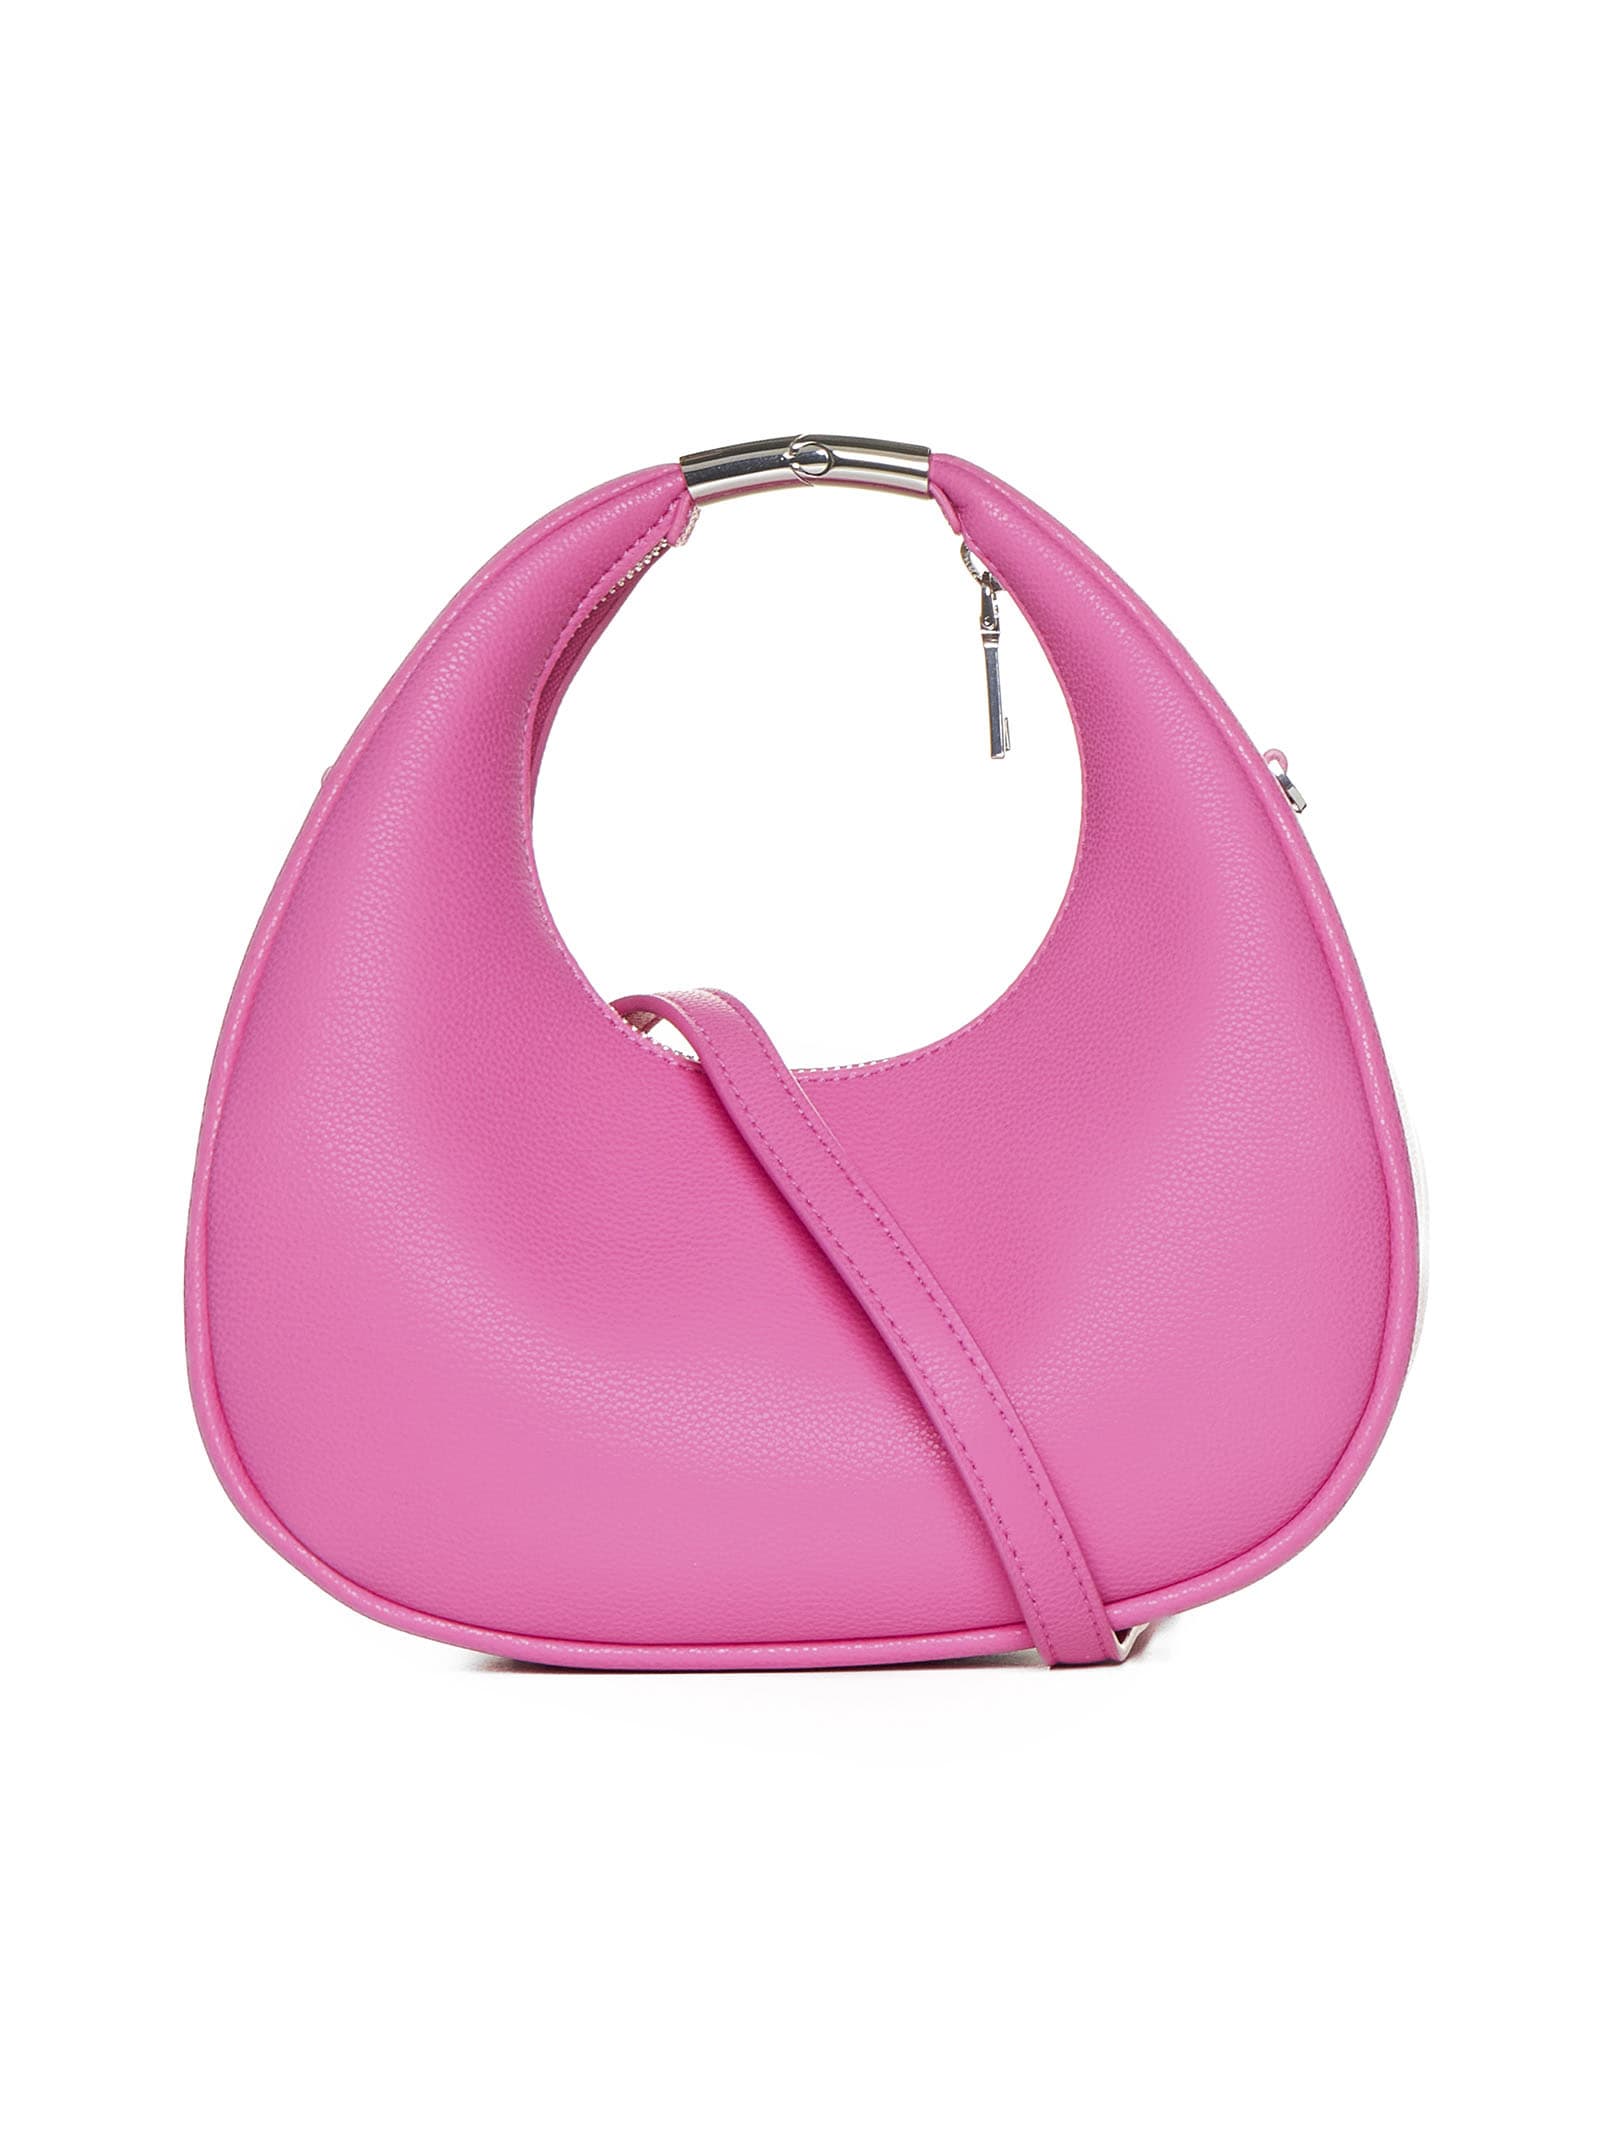 Shop Dkny Shoulder Bag In Hot Pink